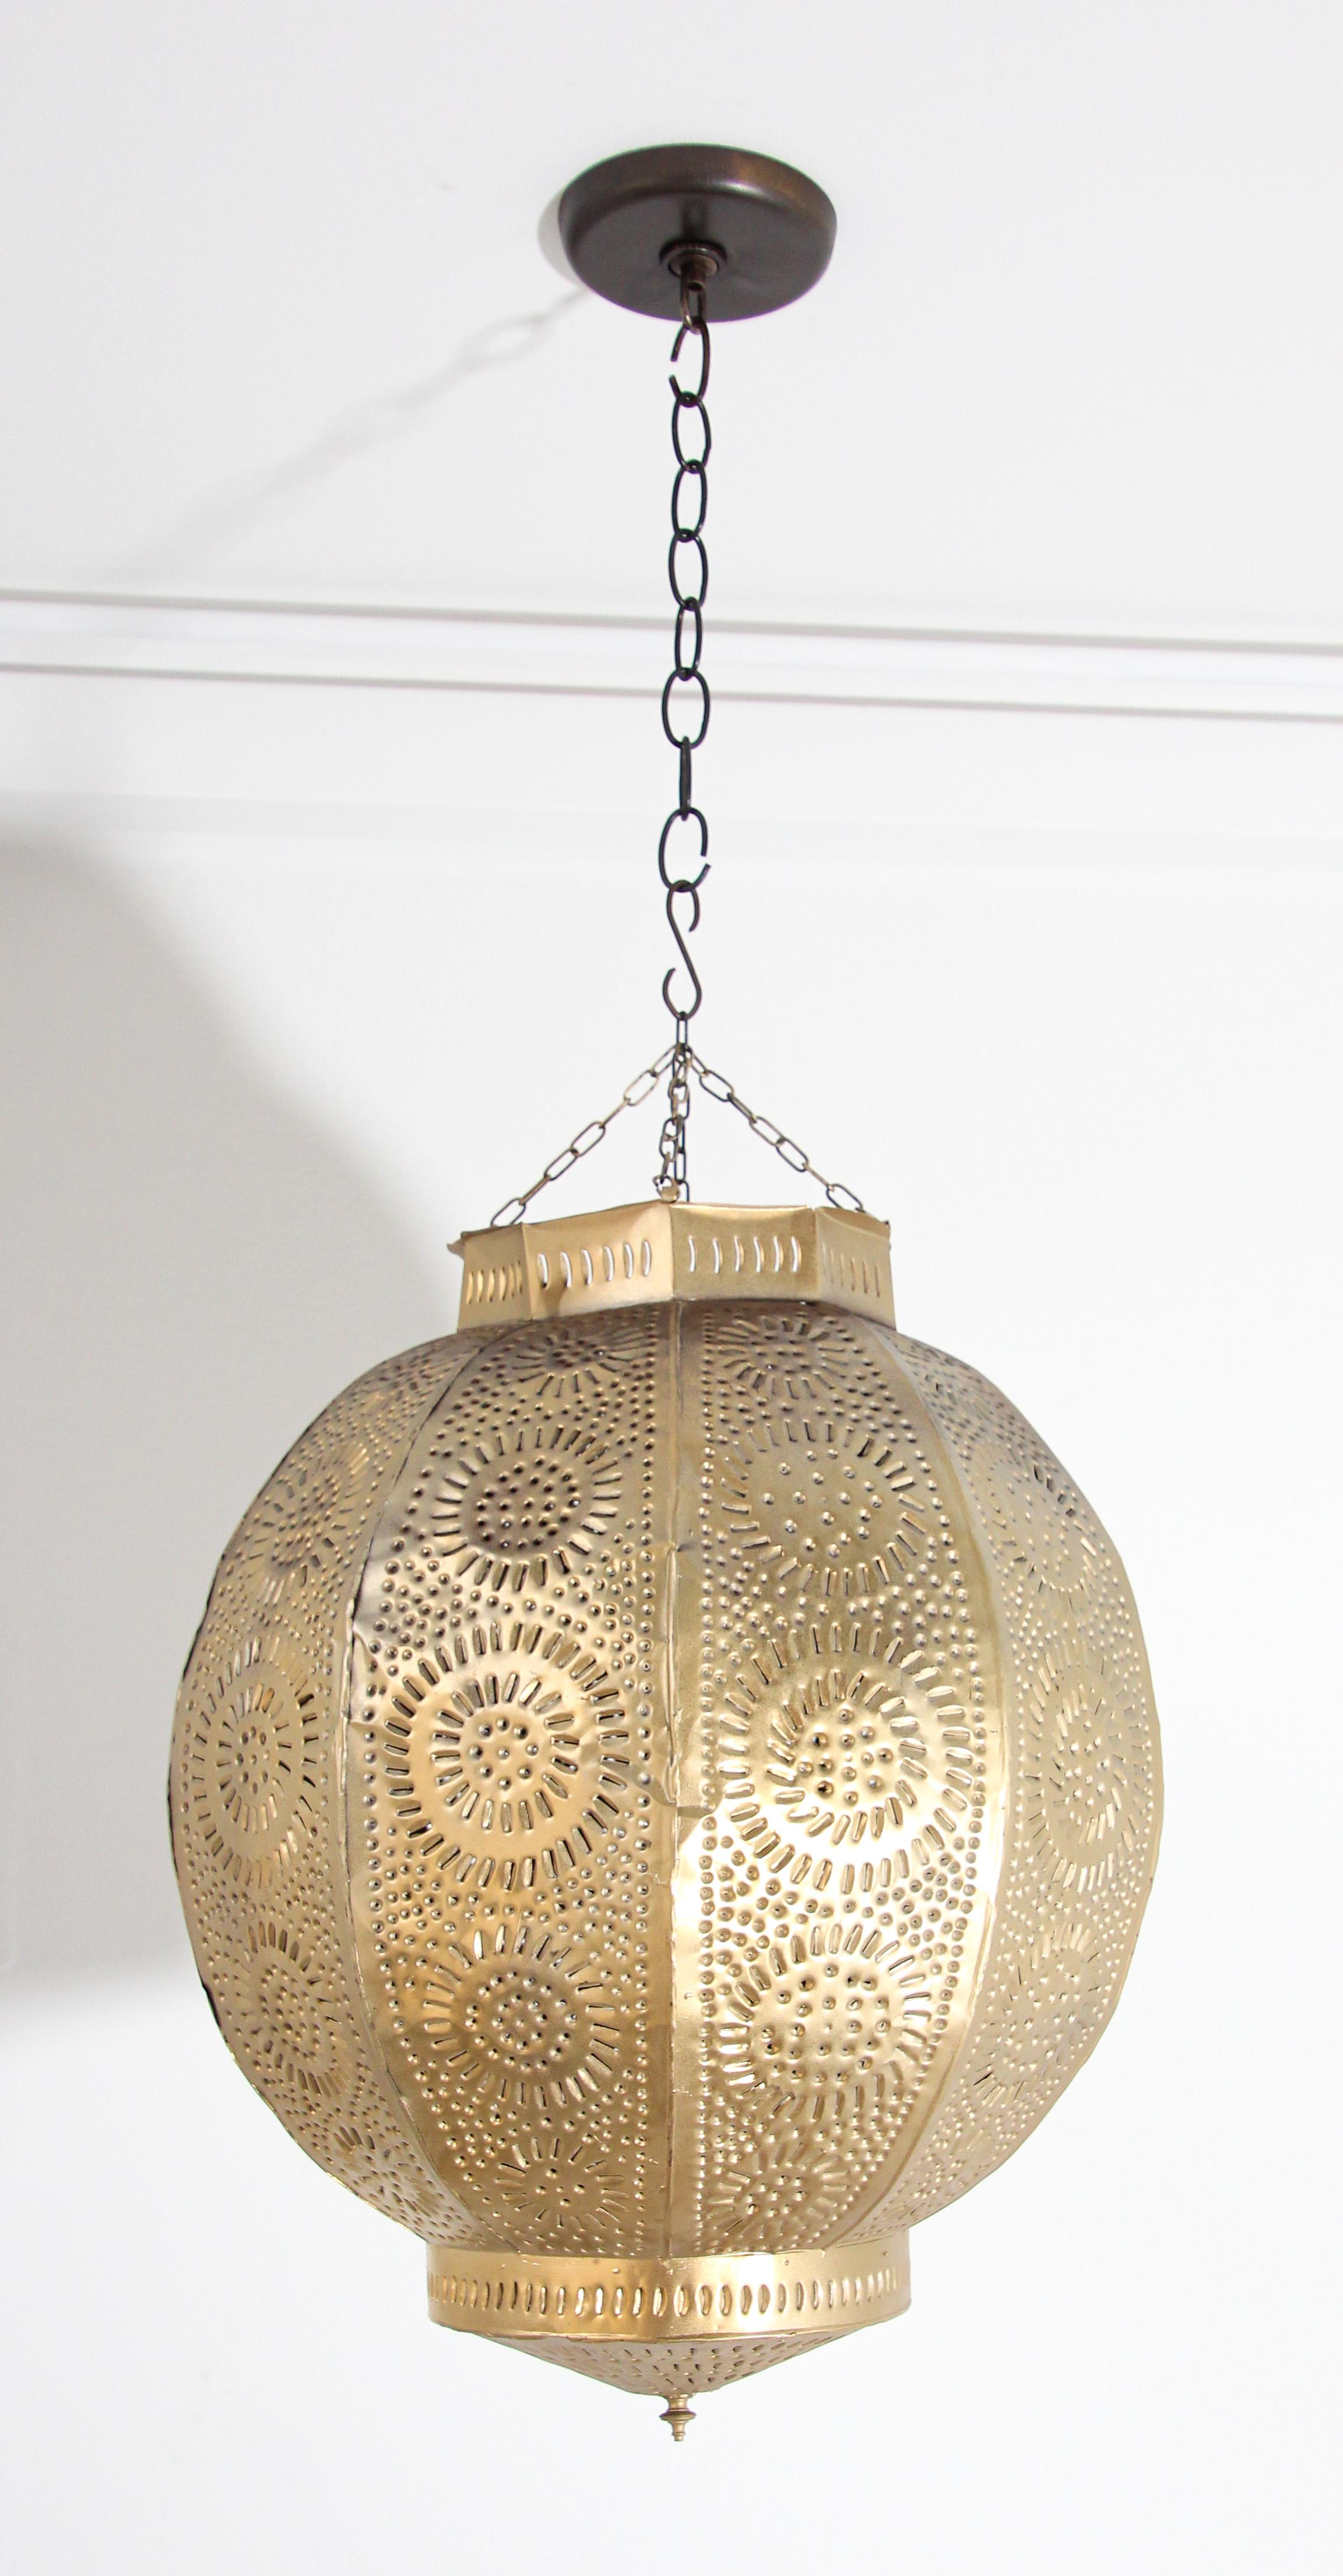 Pendentif orbe en métal doré fabriqué à la main par des artisans qualifiés au Maroc, Afrique du Nord.
Étonnante lanterne marocaine en métal percée à la main de milliers de petits trous pour diffuser la lumière.
Forme de grenade ornée de motifs